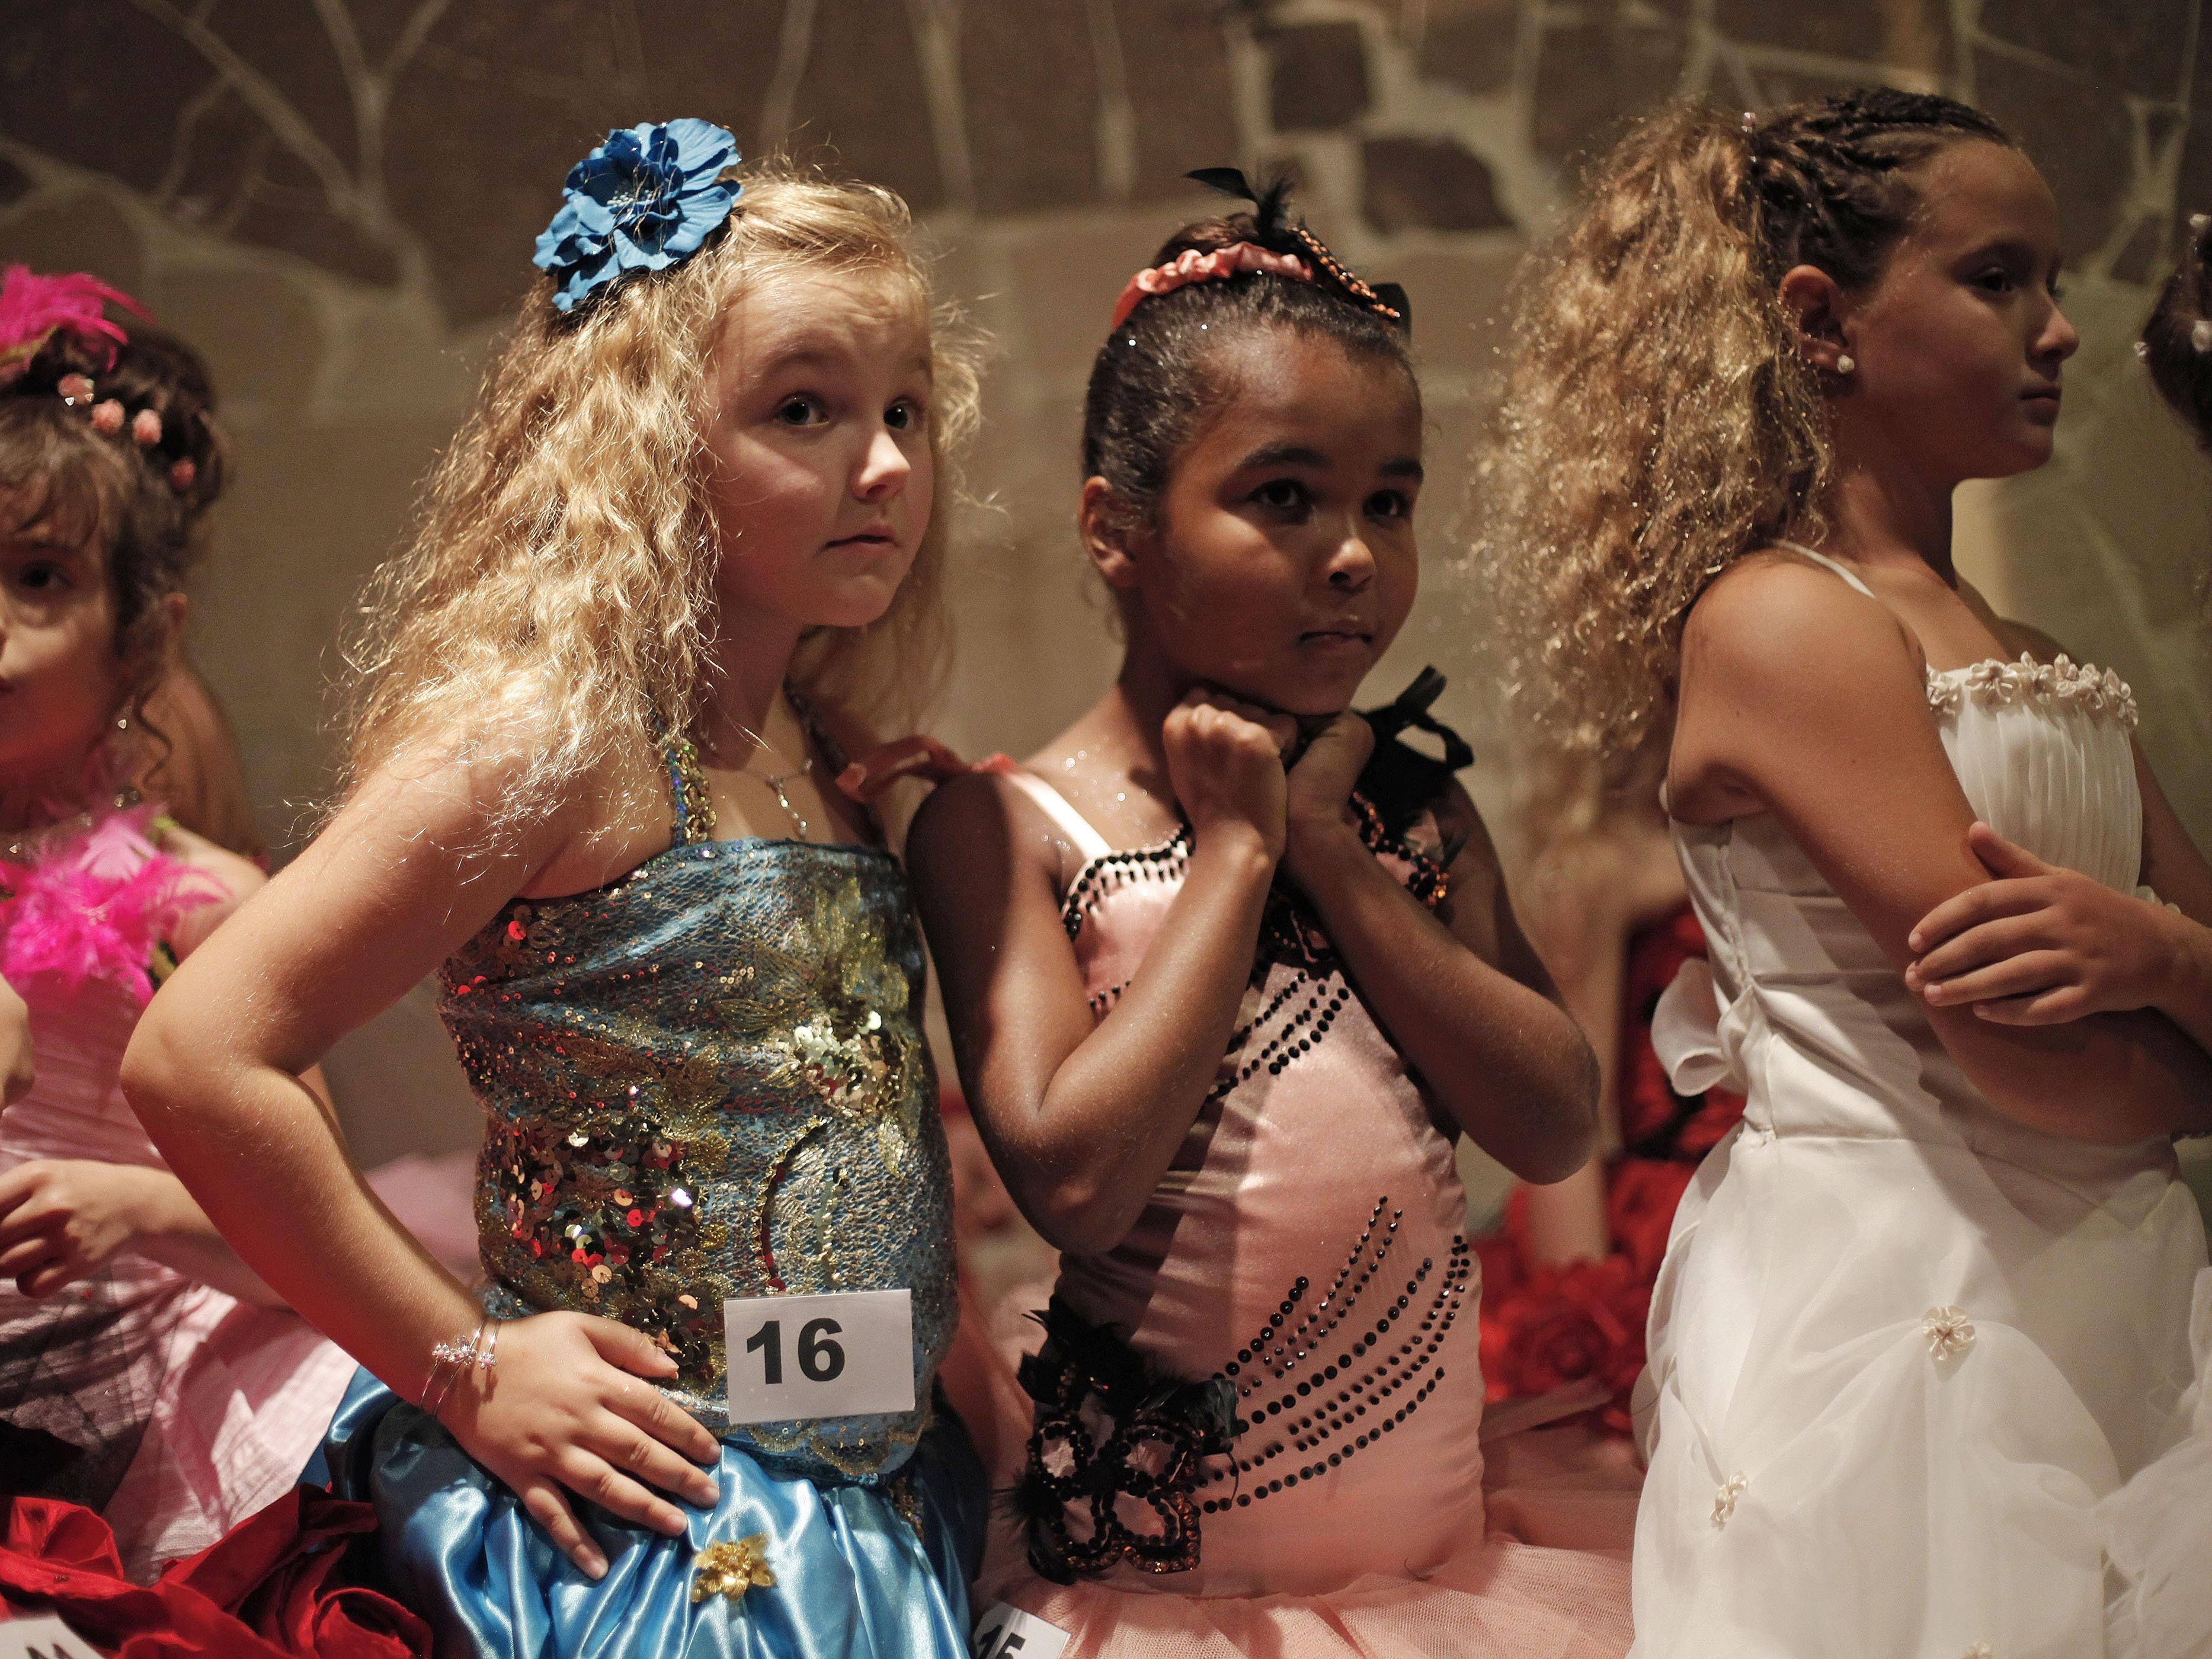 Trotz dem geplanten Verbot von Schönheitswettbewerben für Mädchen, soll am Samstag die Mini-Miss-Wahl in Paris stattfinden.